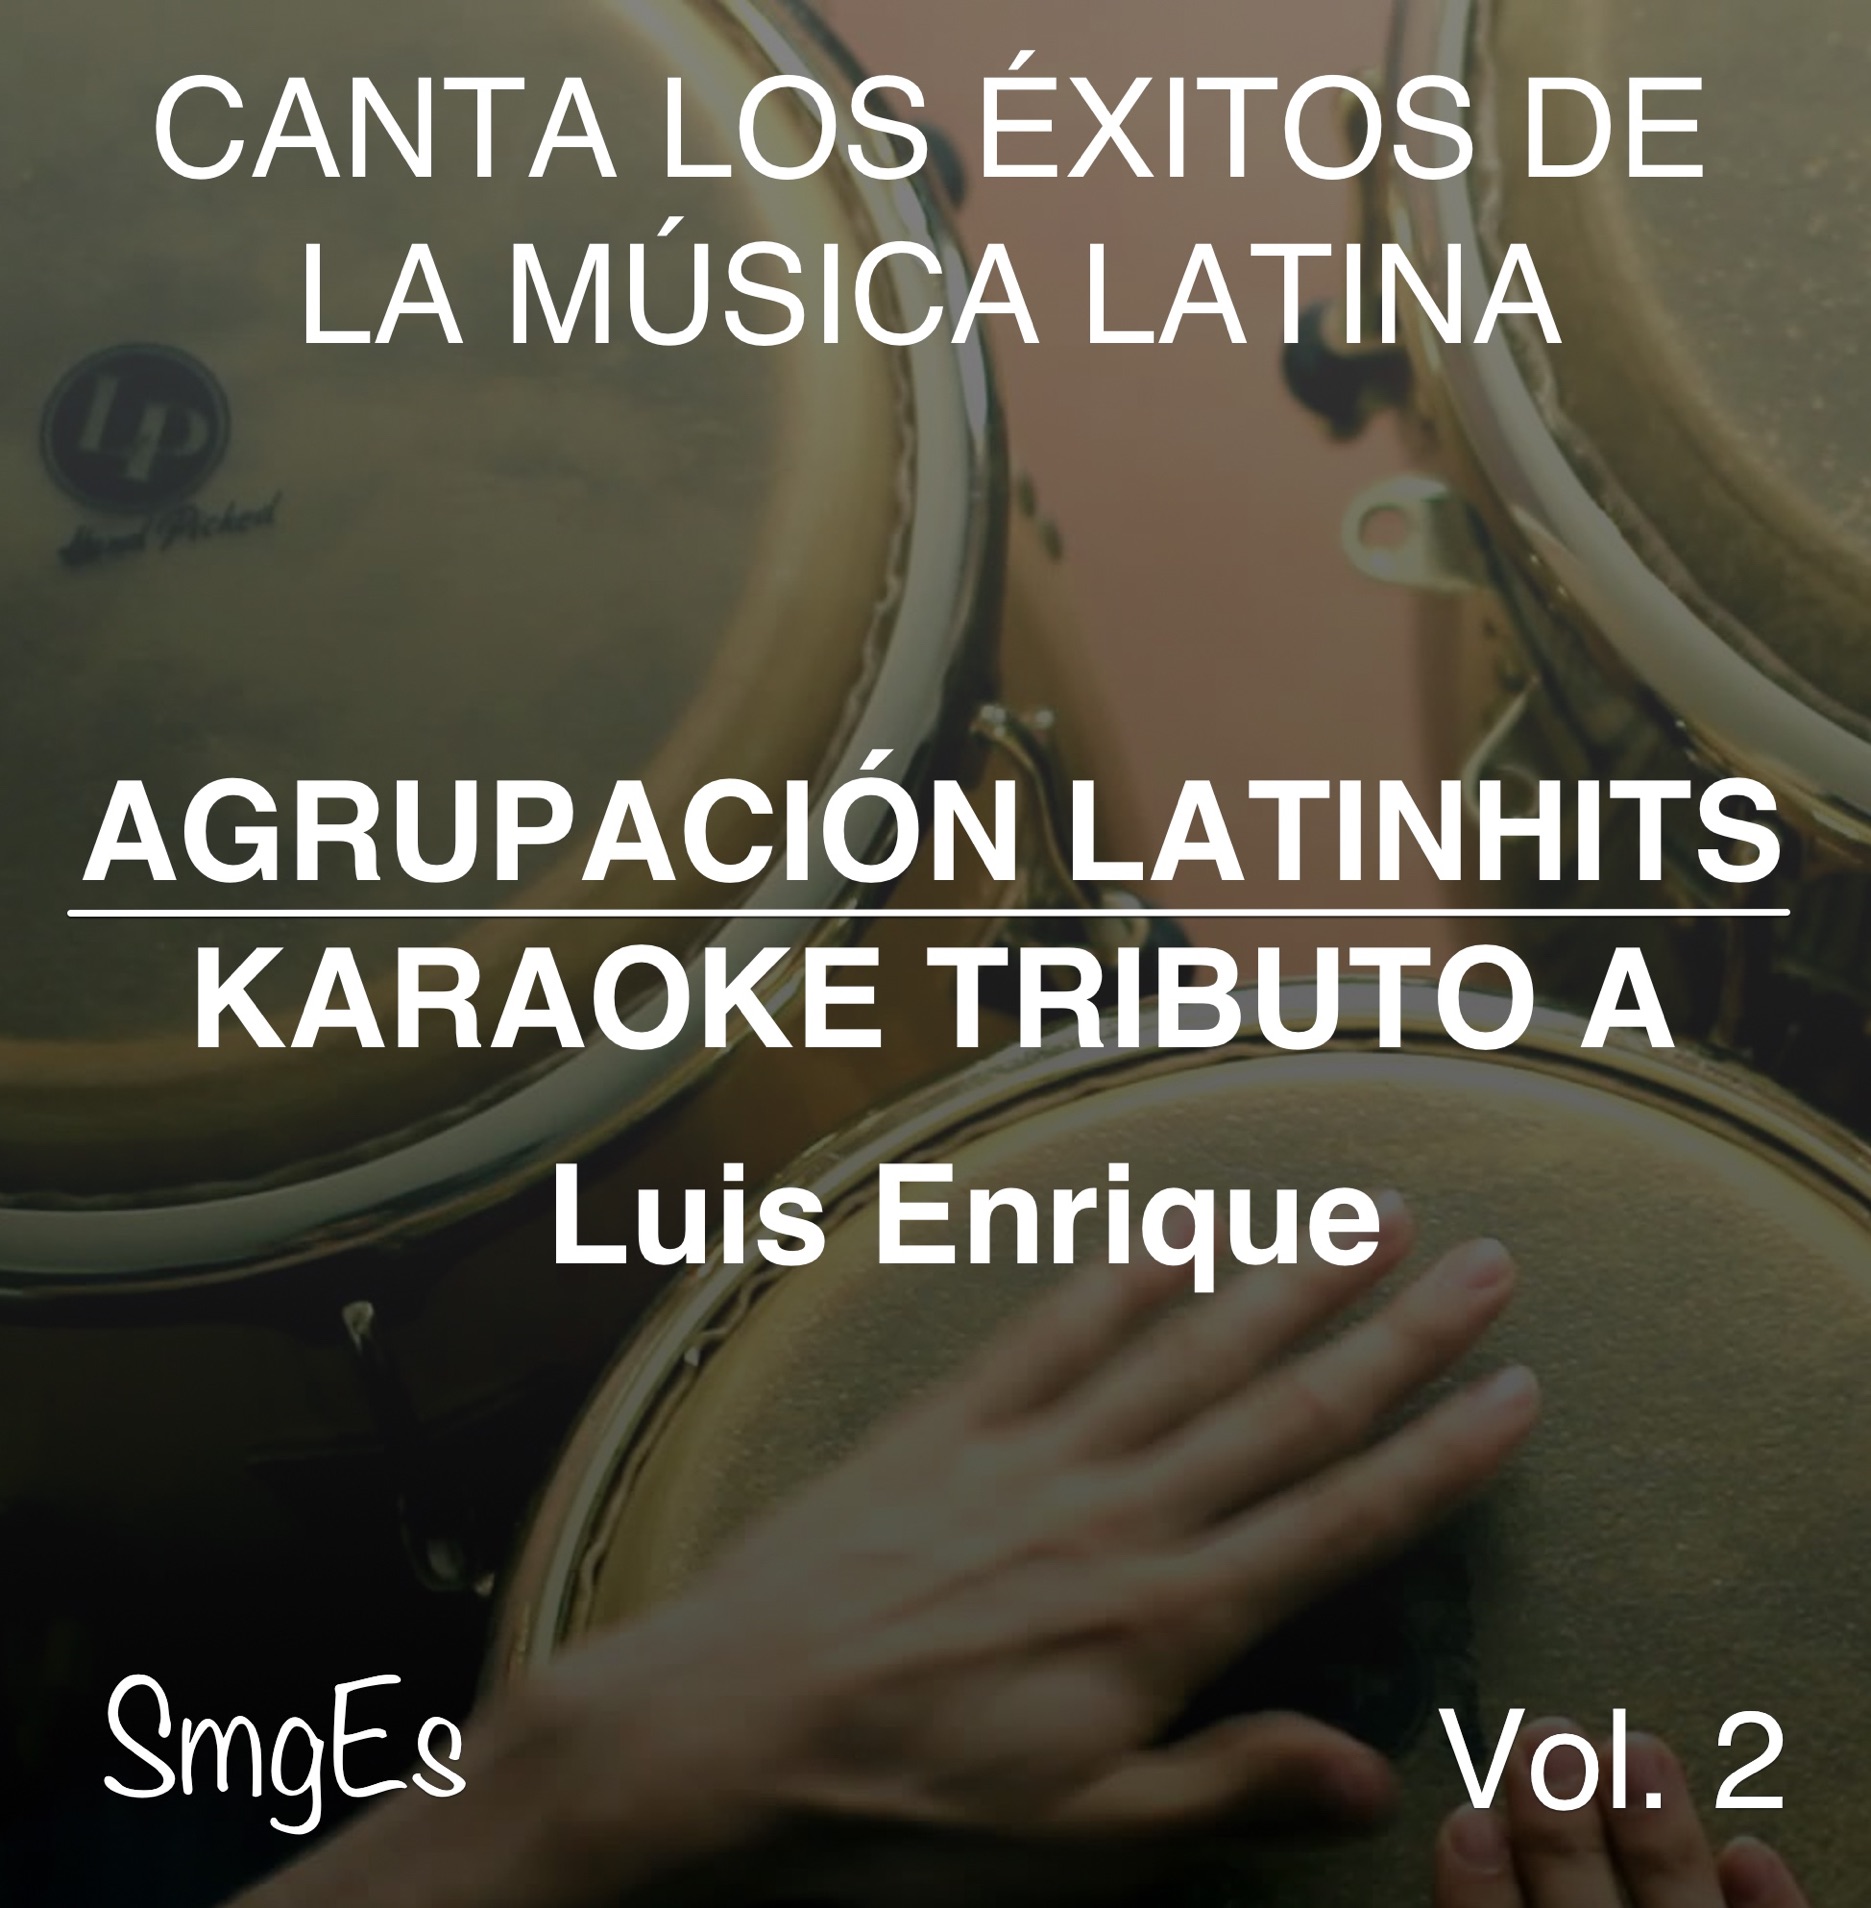 Instrumental Karaoke Series: Luis Enrique, Vol. 2 (Karaoke Version) -  Agrupacion LatinHits - Album - Apple Music United States